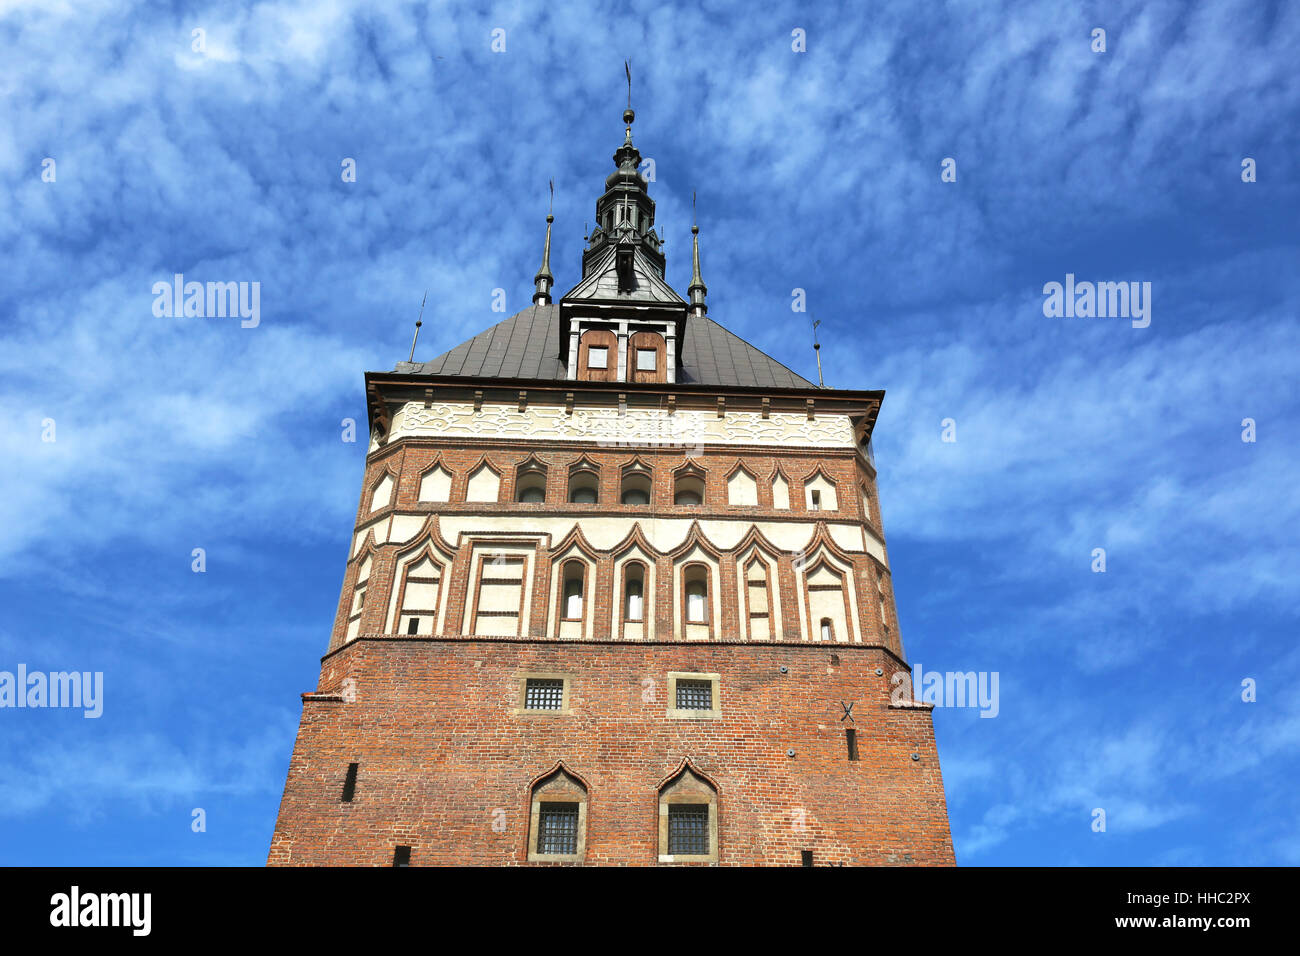 stockturm gdansk Stock Photo